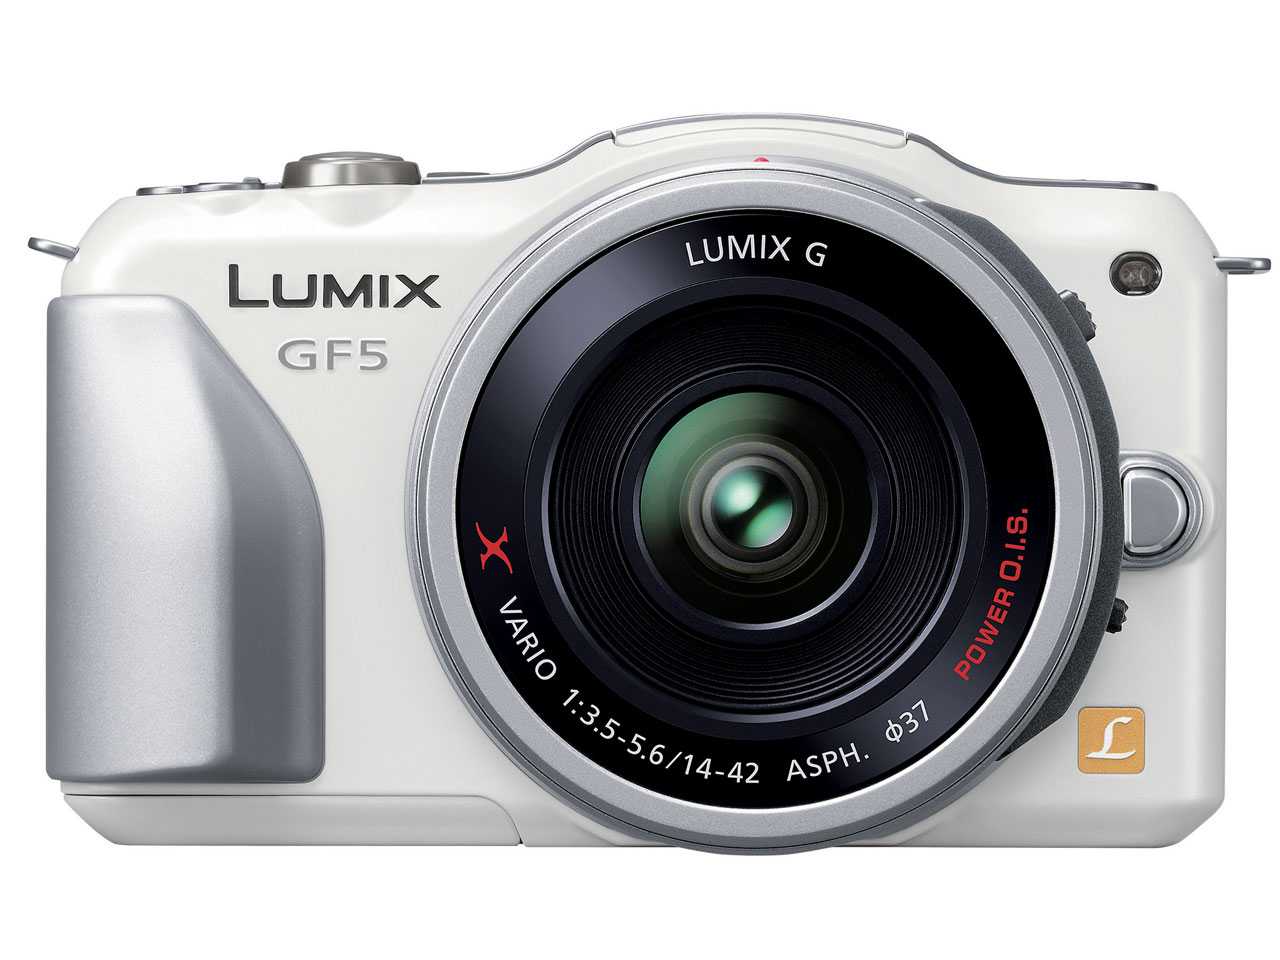 Panasonic lumix dmc-gf5 kit купить по акционной цене , отзывы и обзоры.